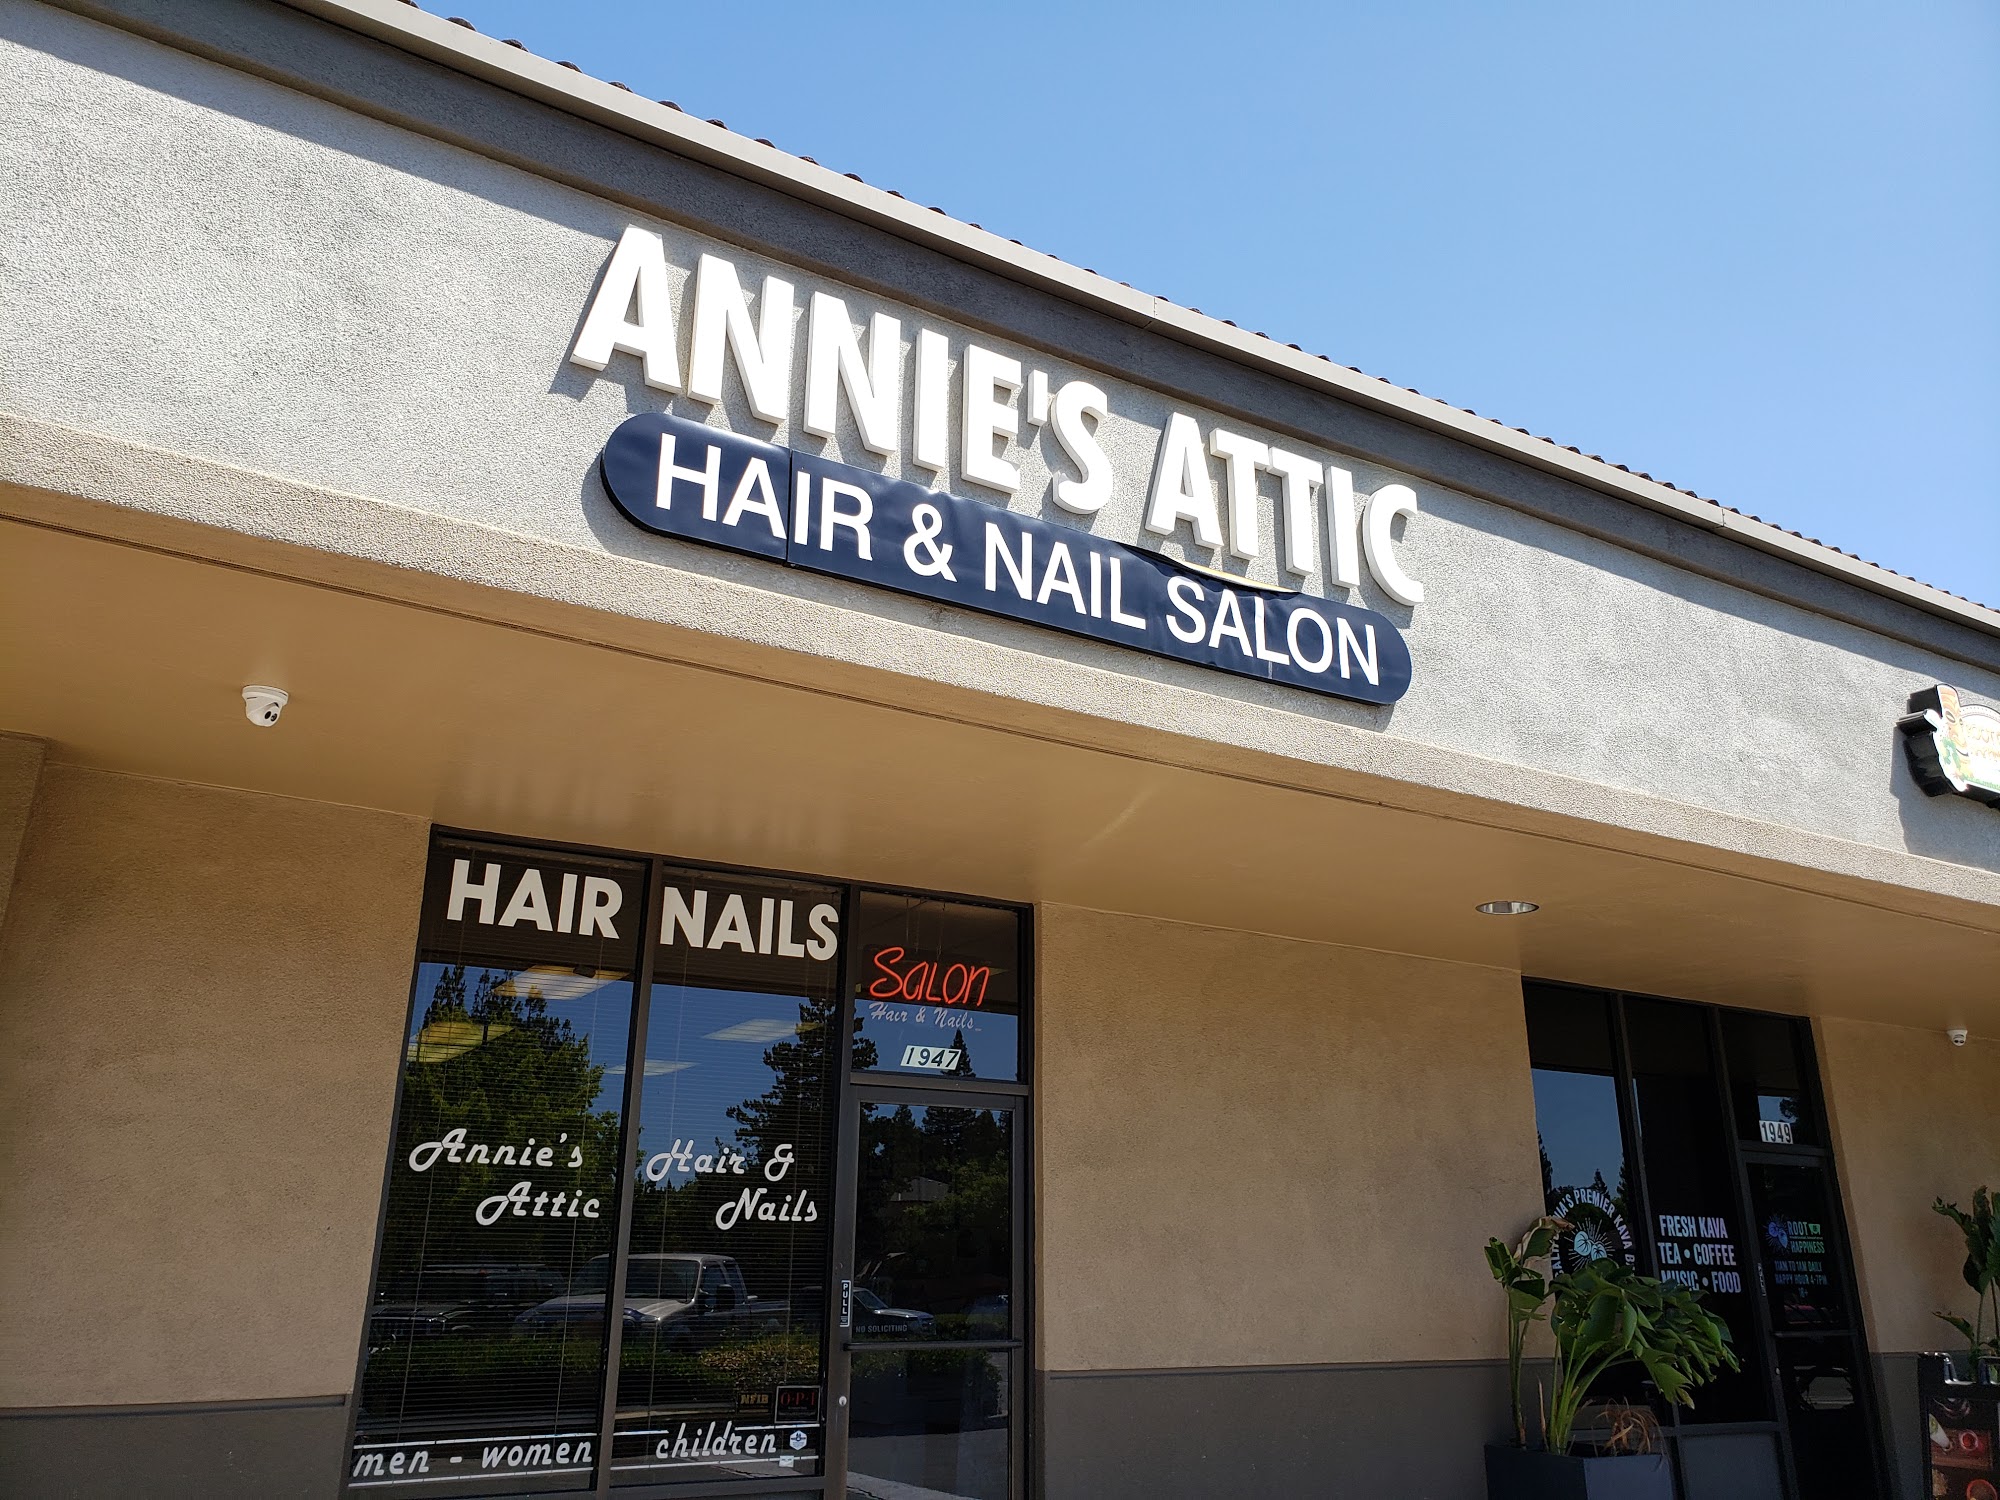 Annie's Attic Hair & Nail Sln